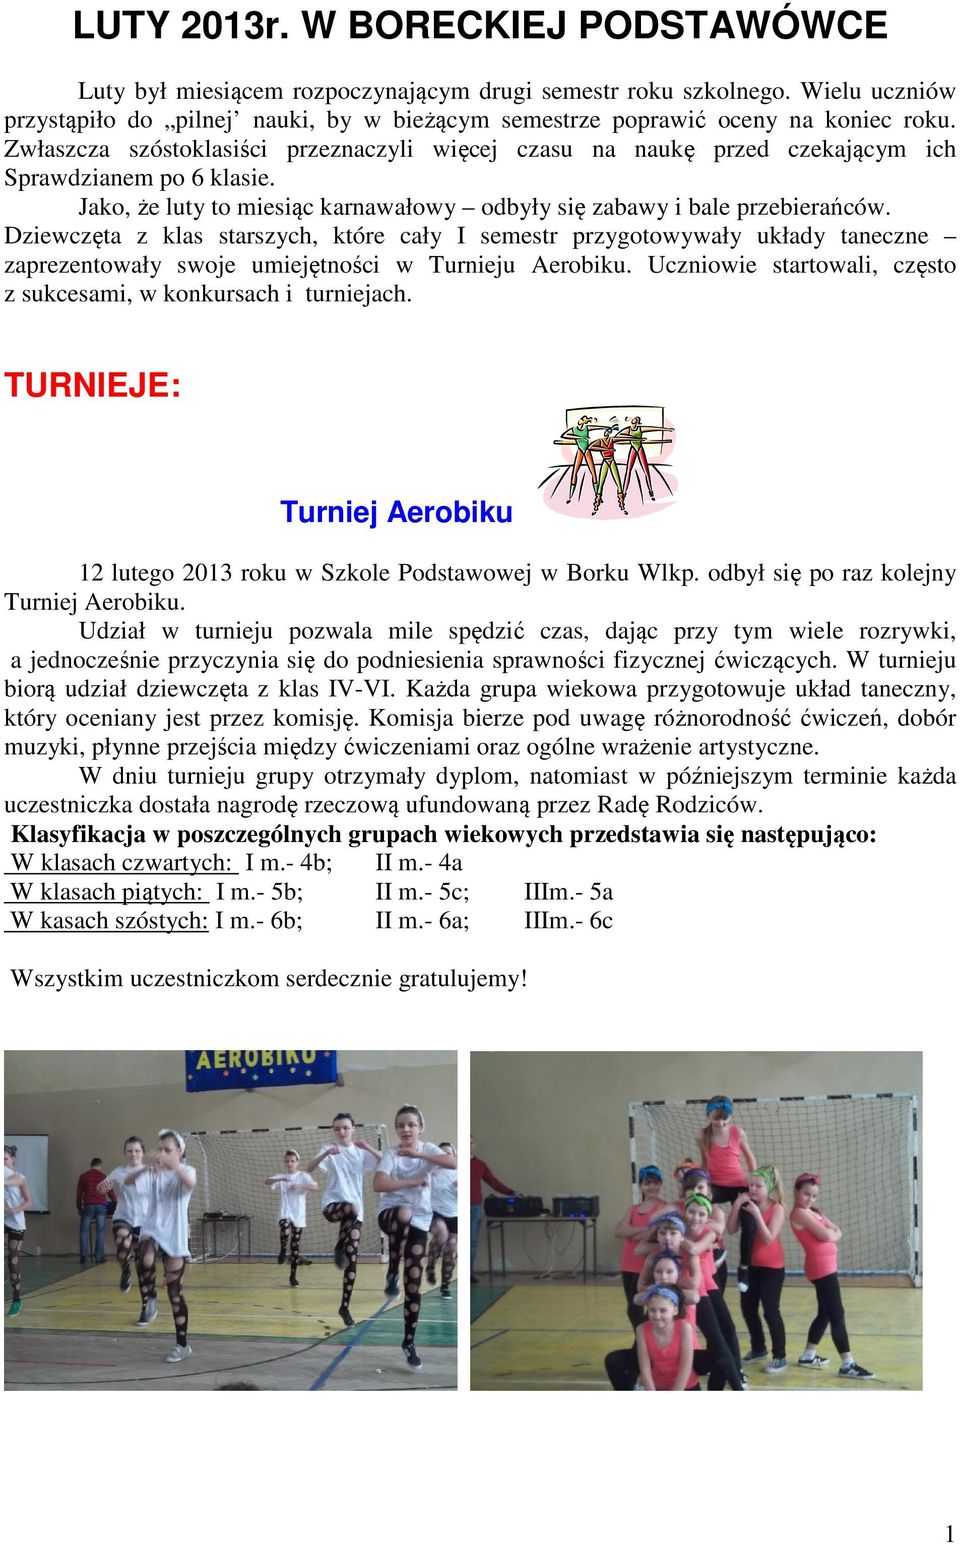 Dziewczęta z klas starszych, które cały I semestr przygotowywały układy taneczne zaprezentowały swoje umiejętności w Turnieju Aerobiku.